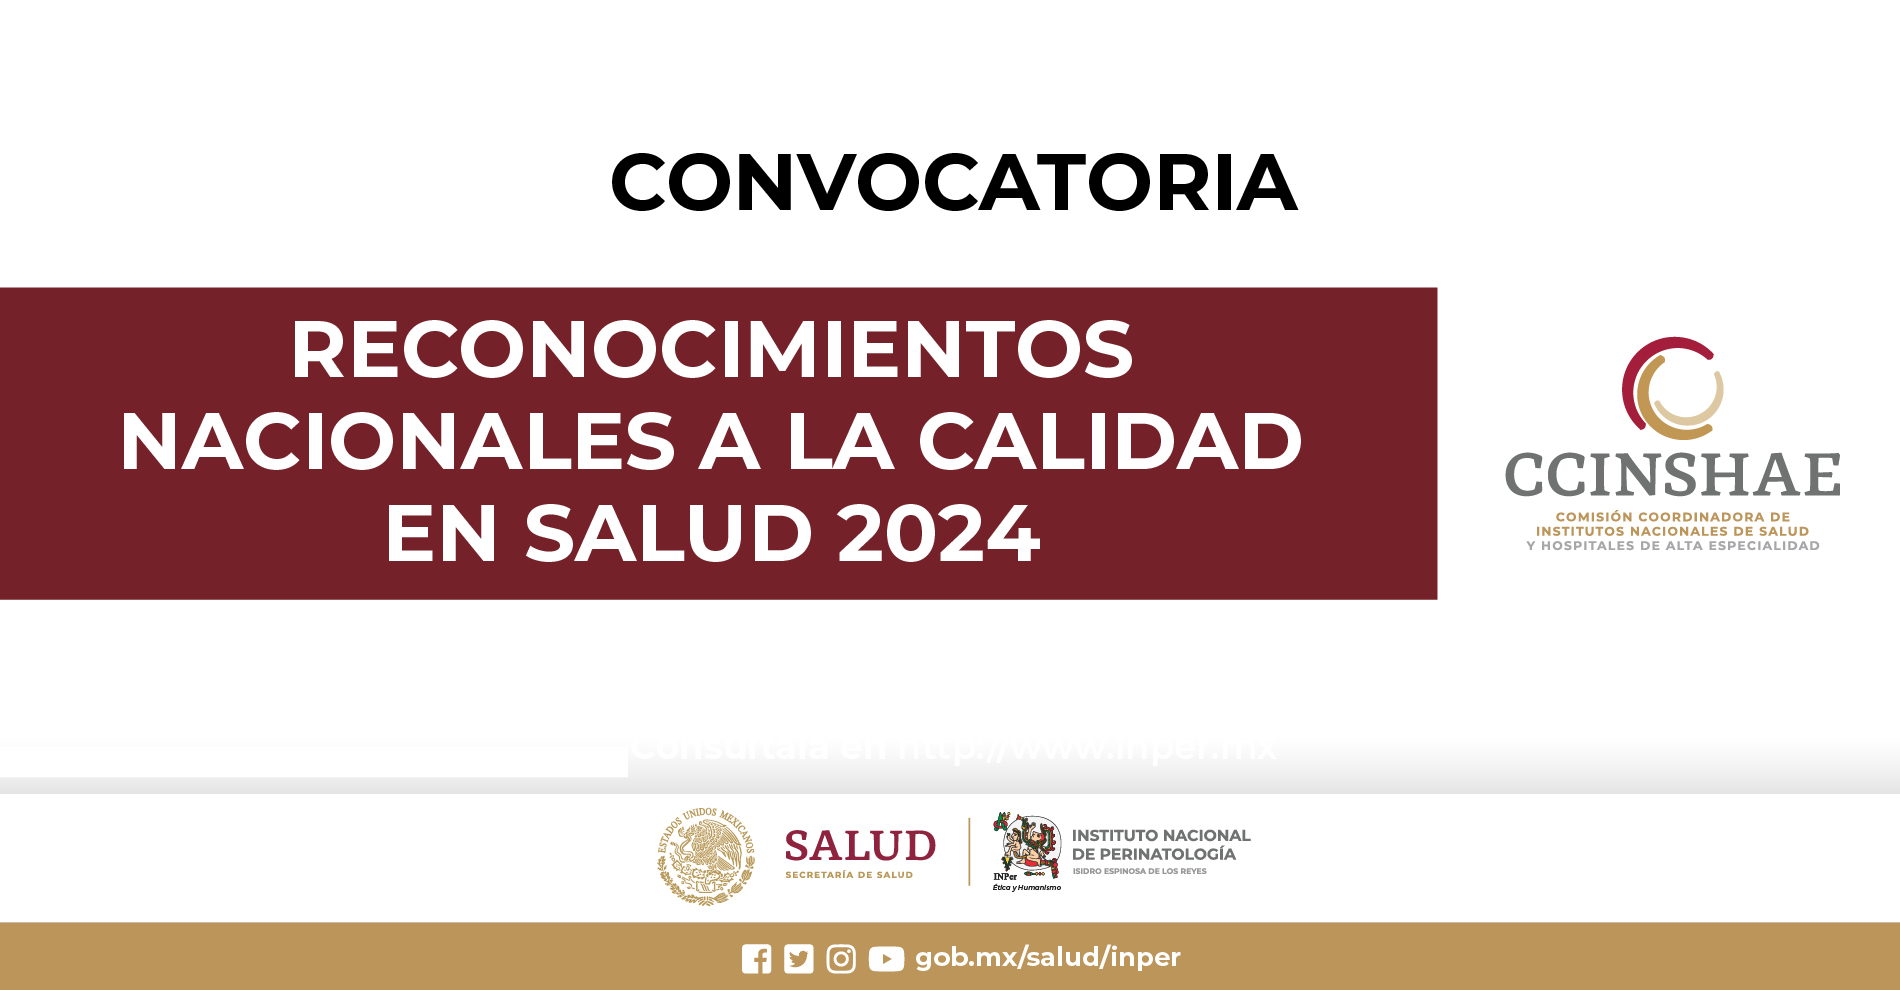 Convocatoria 2024
RECONOCIMIENTOS NACIONALES A LA CALIDAD EN SALUD